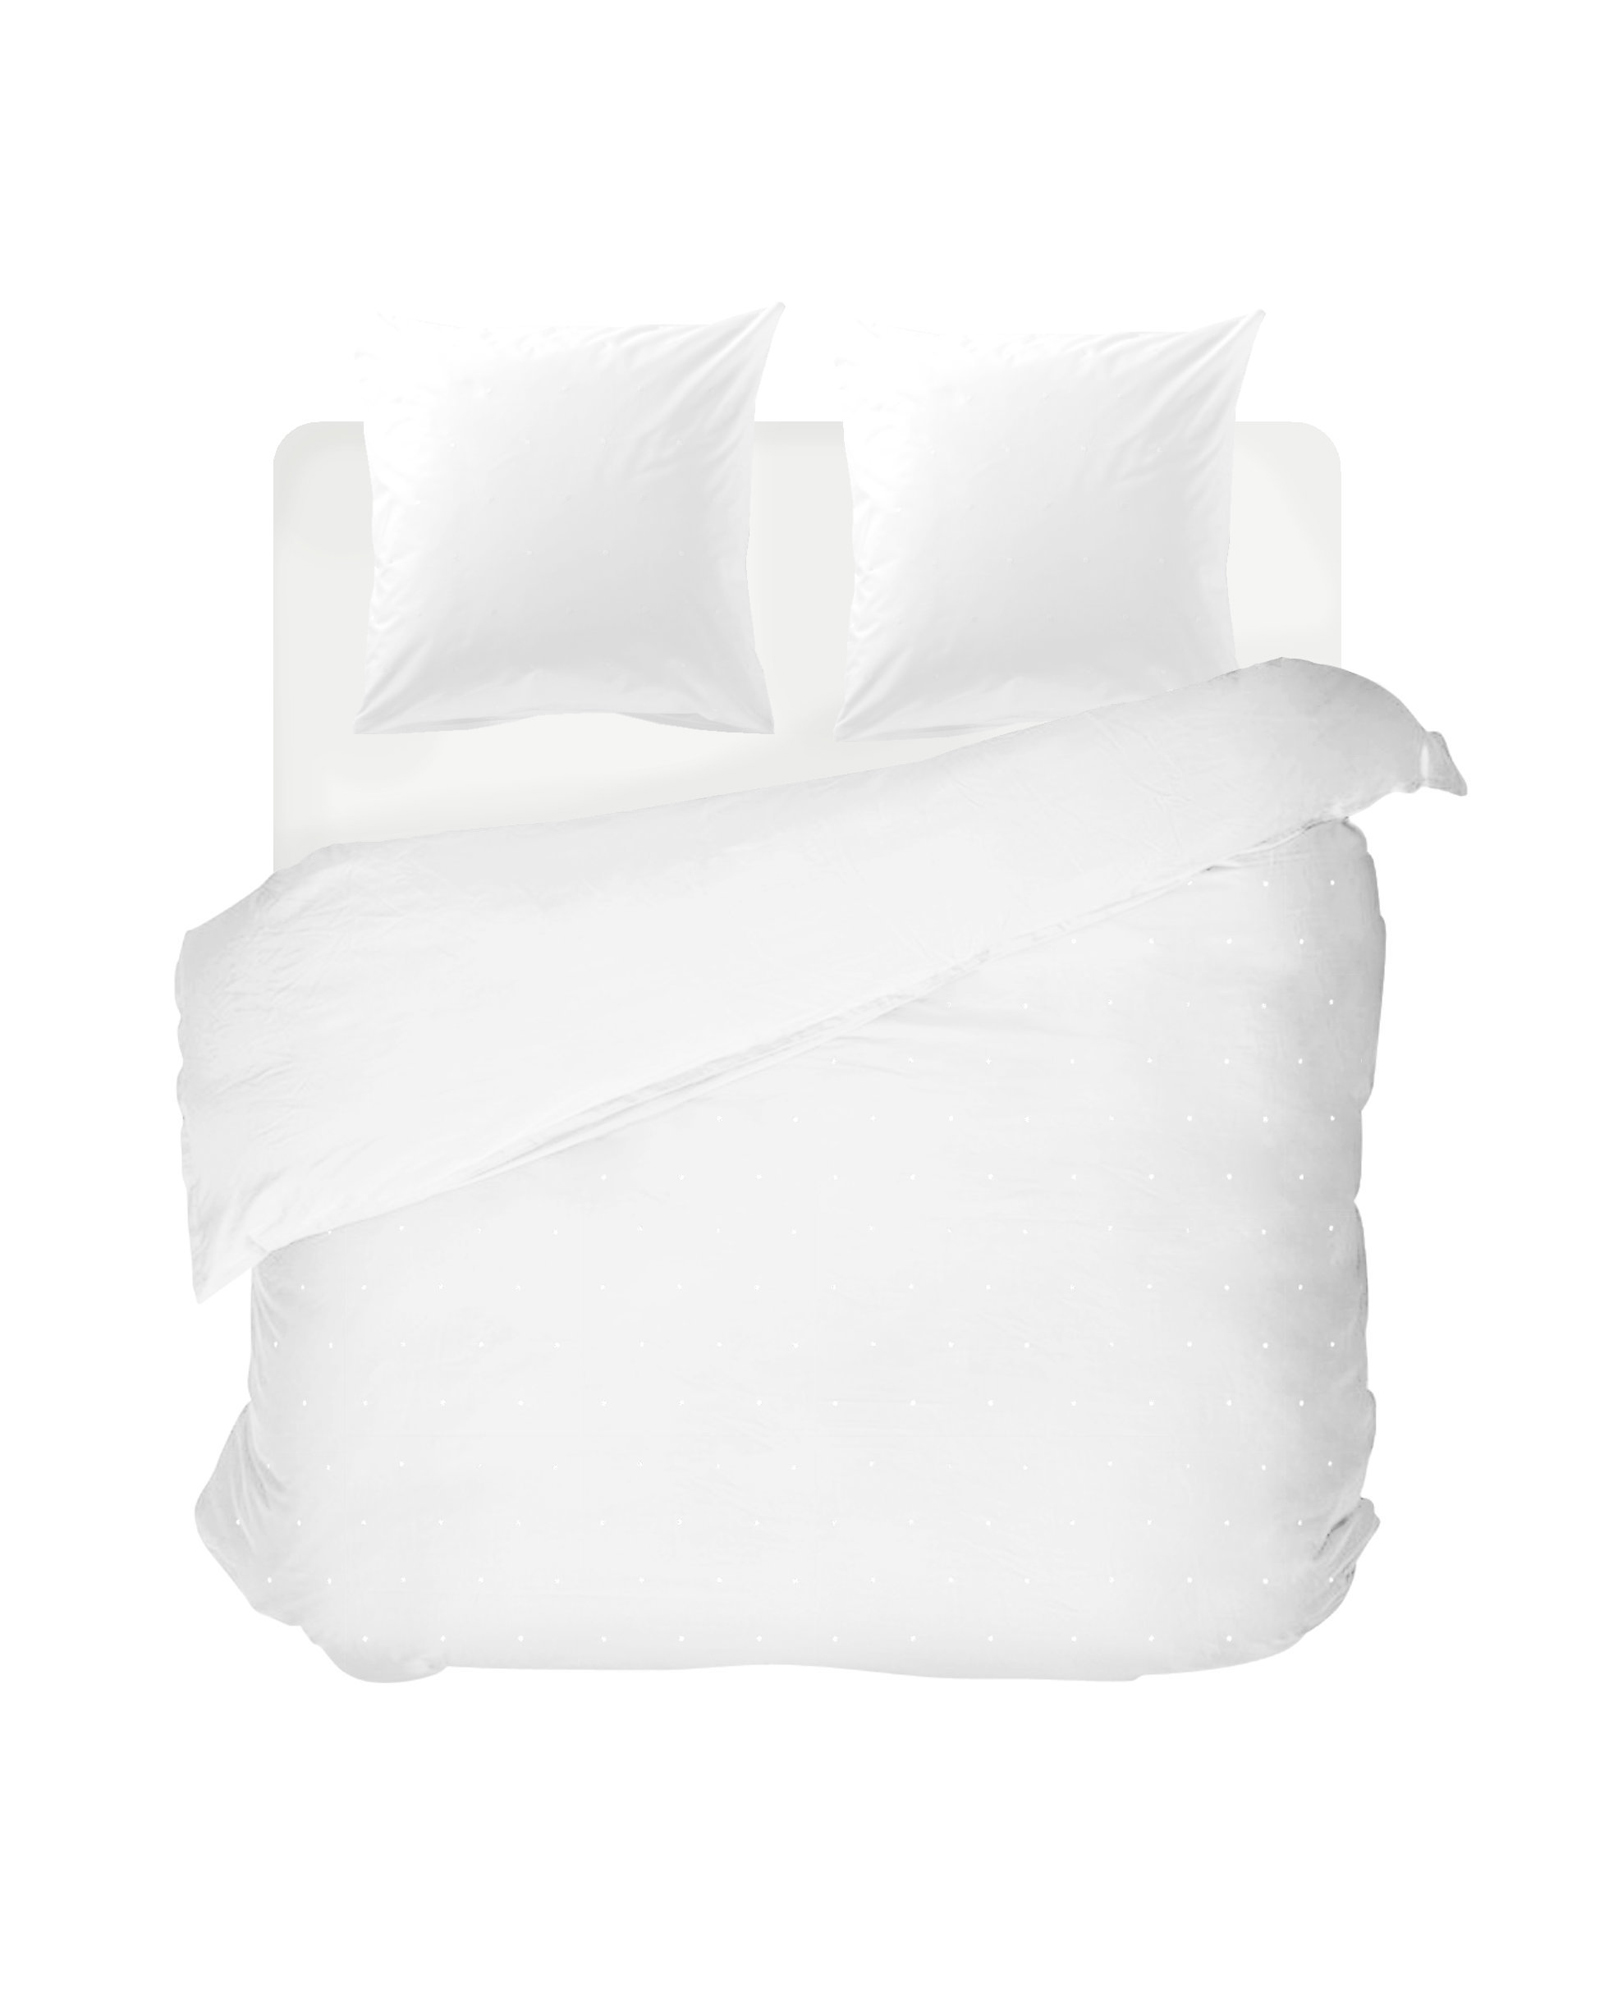 Bed linen set DOTS White